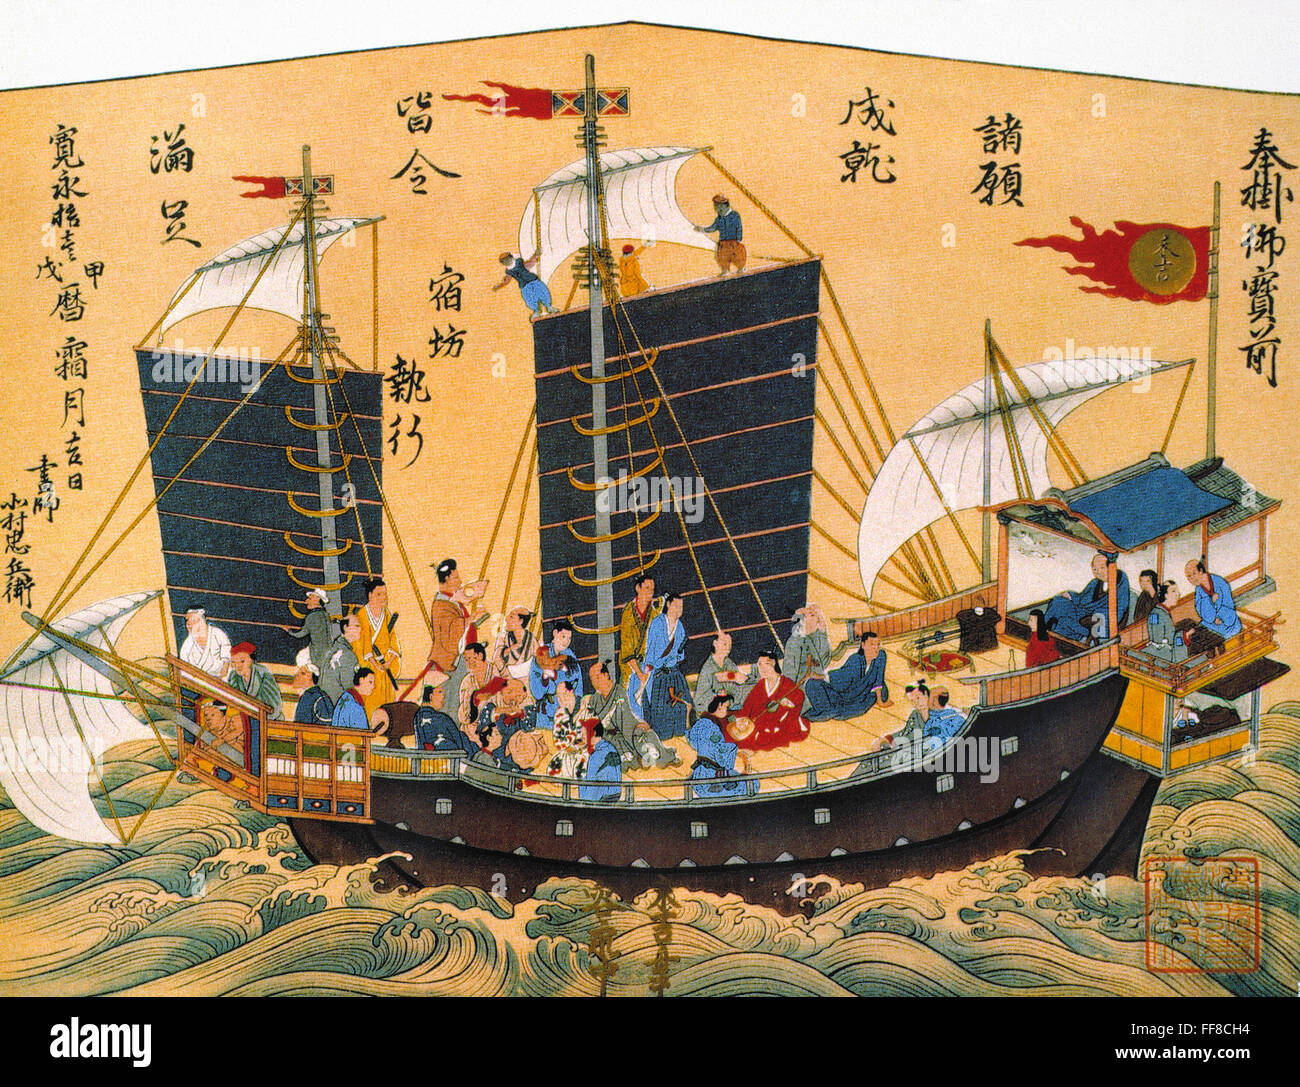 Китайская лодка 6 букв. Корабль Чжэн ши. Вокоу - японские морские пираты. Китайская Джонка 17 век. Японские мореплаватели 17 век.